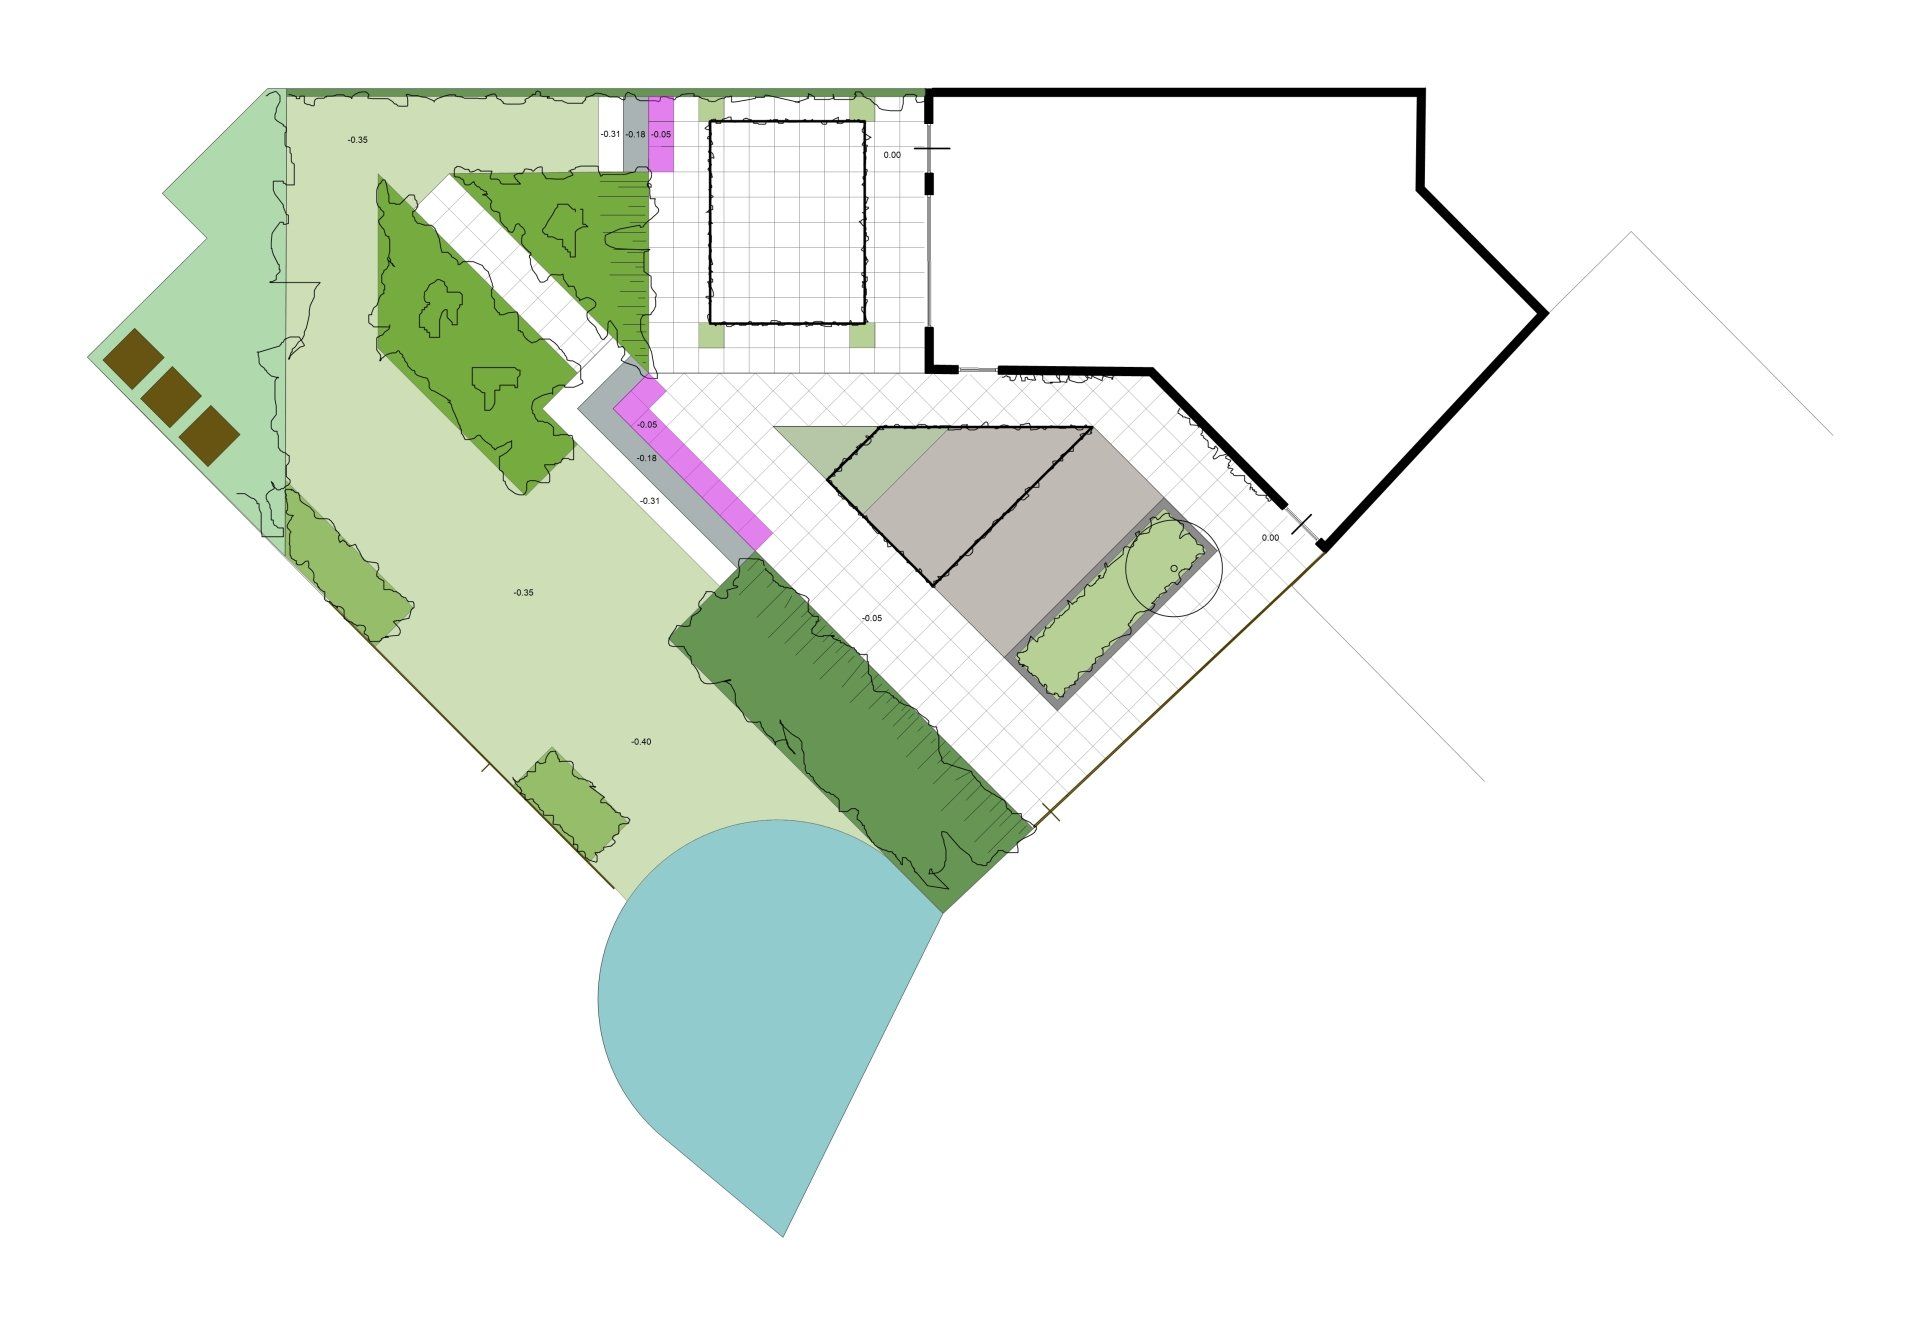 Stadstuin tuin Klimrozen Groningen Beijum ontwerp groen hoogteverschillen bestrating rijtjeshuis beschut pergola Wisteria blauwe regen